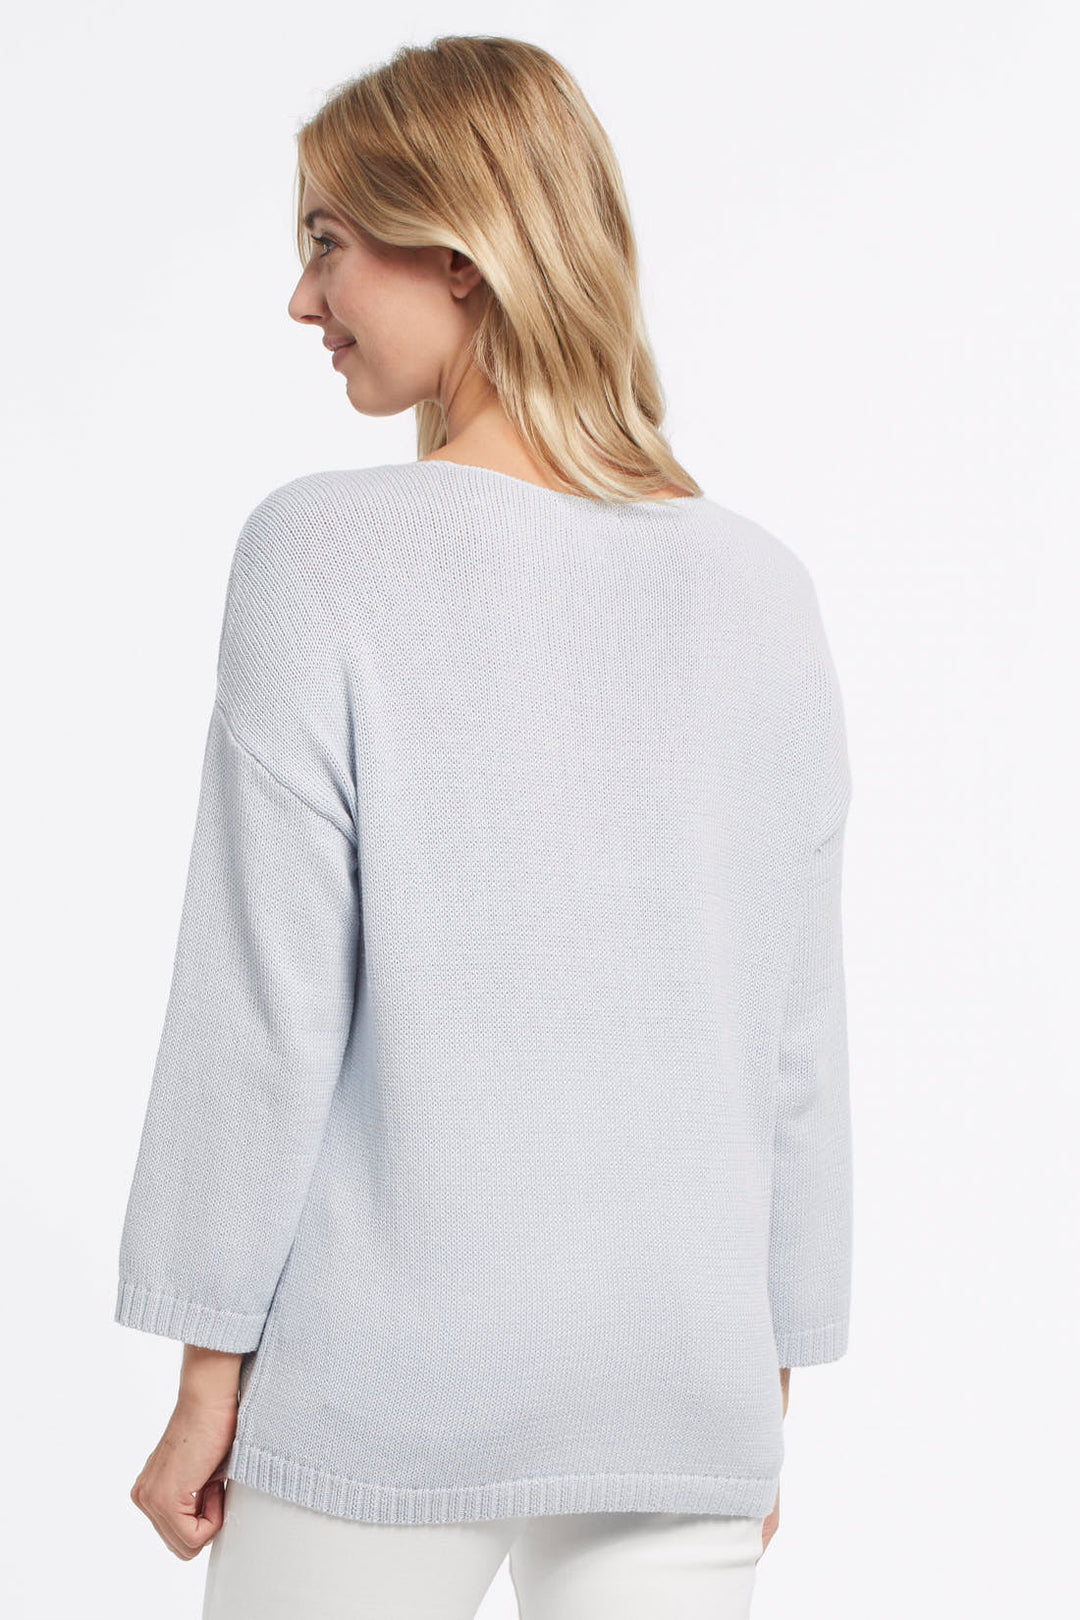 3/4 Sleeve Fun Print Sweater